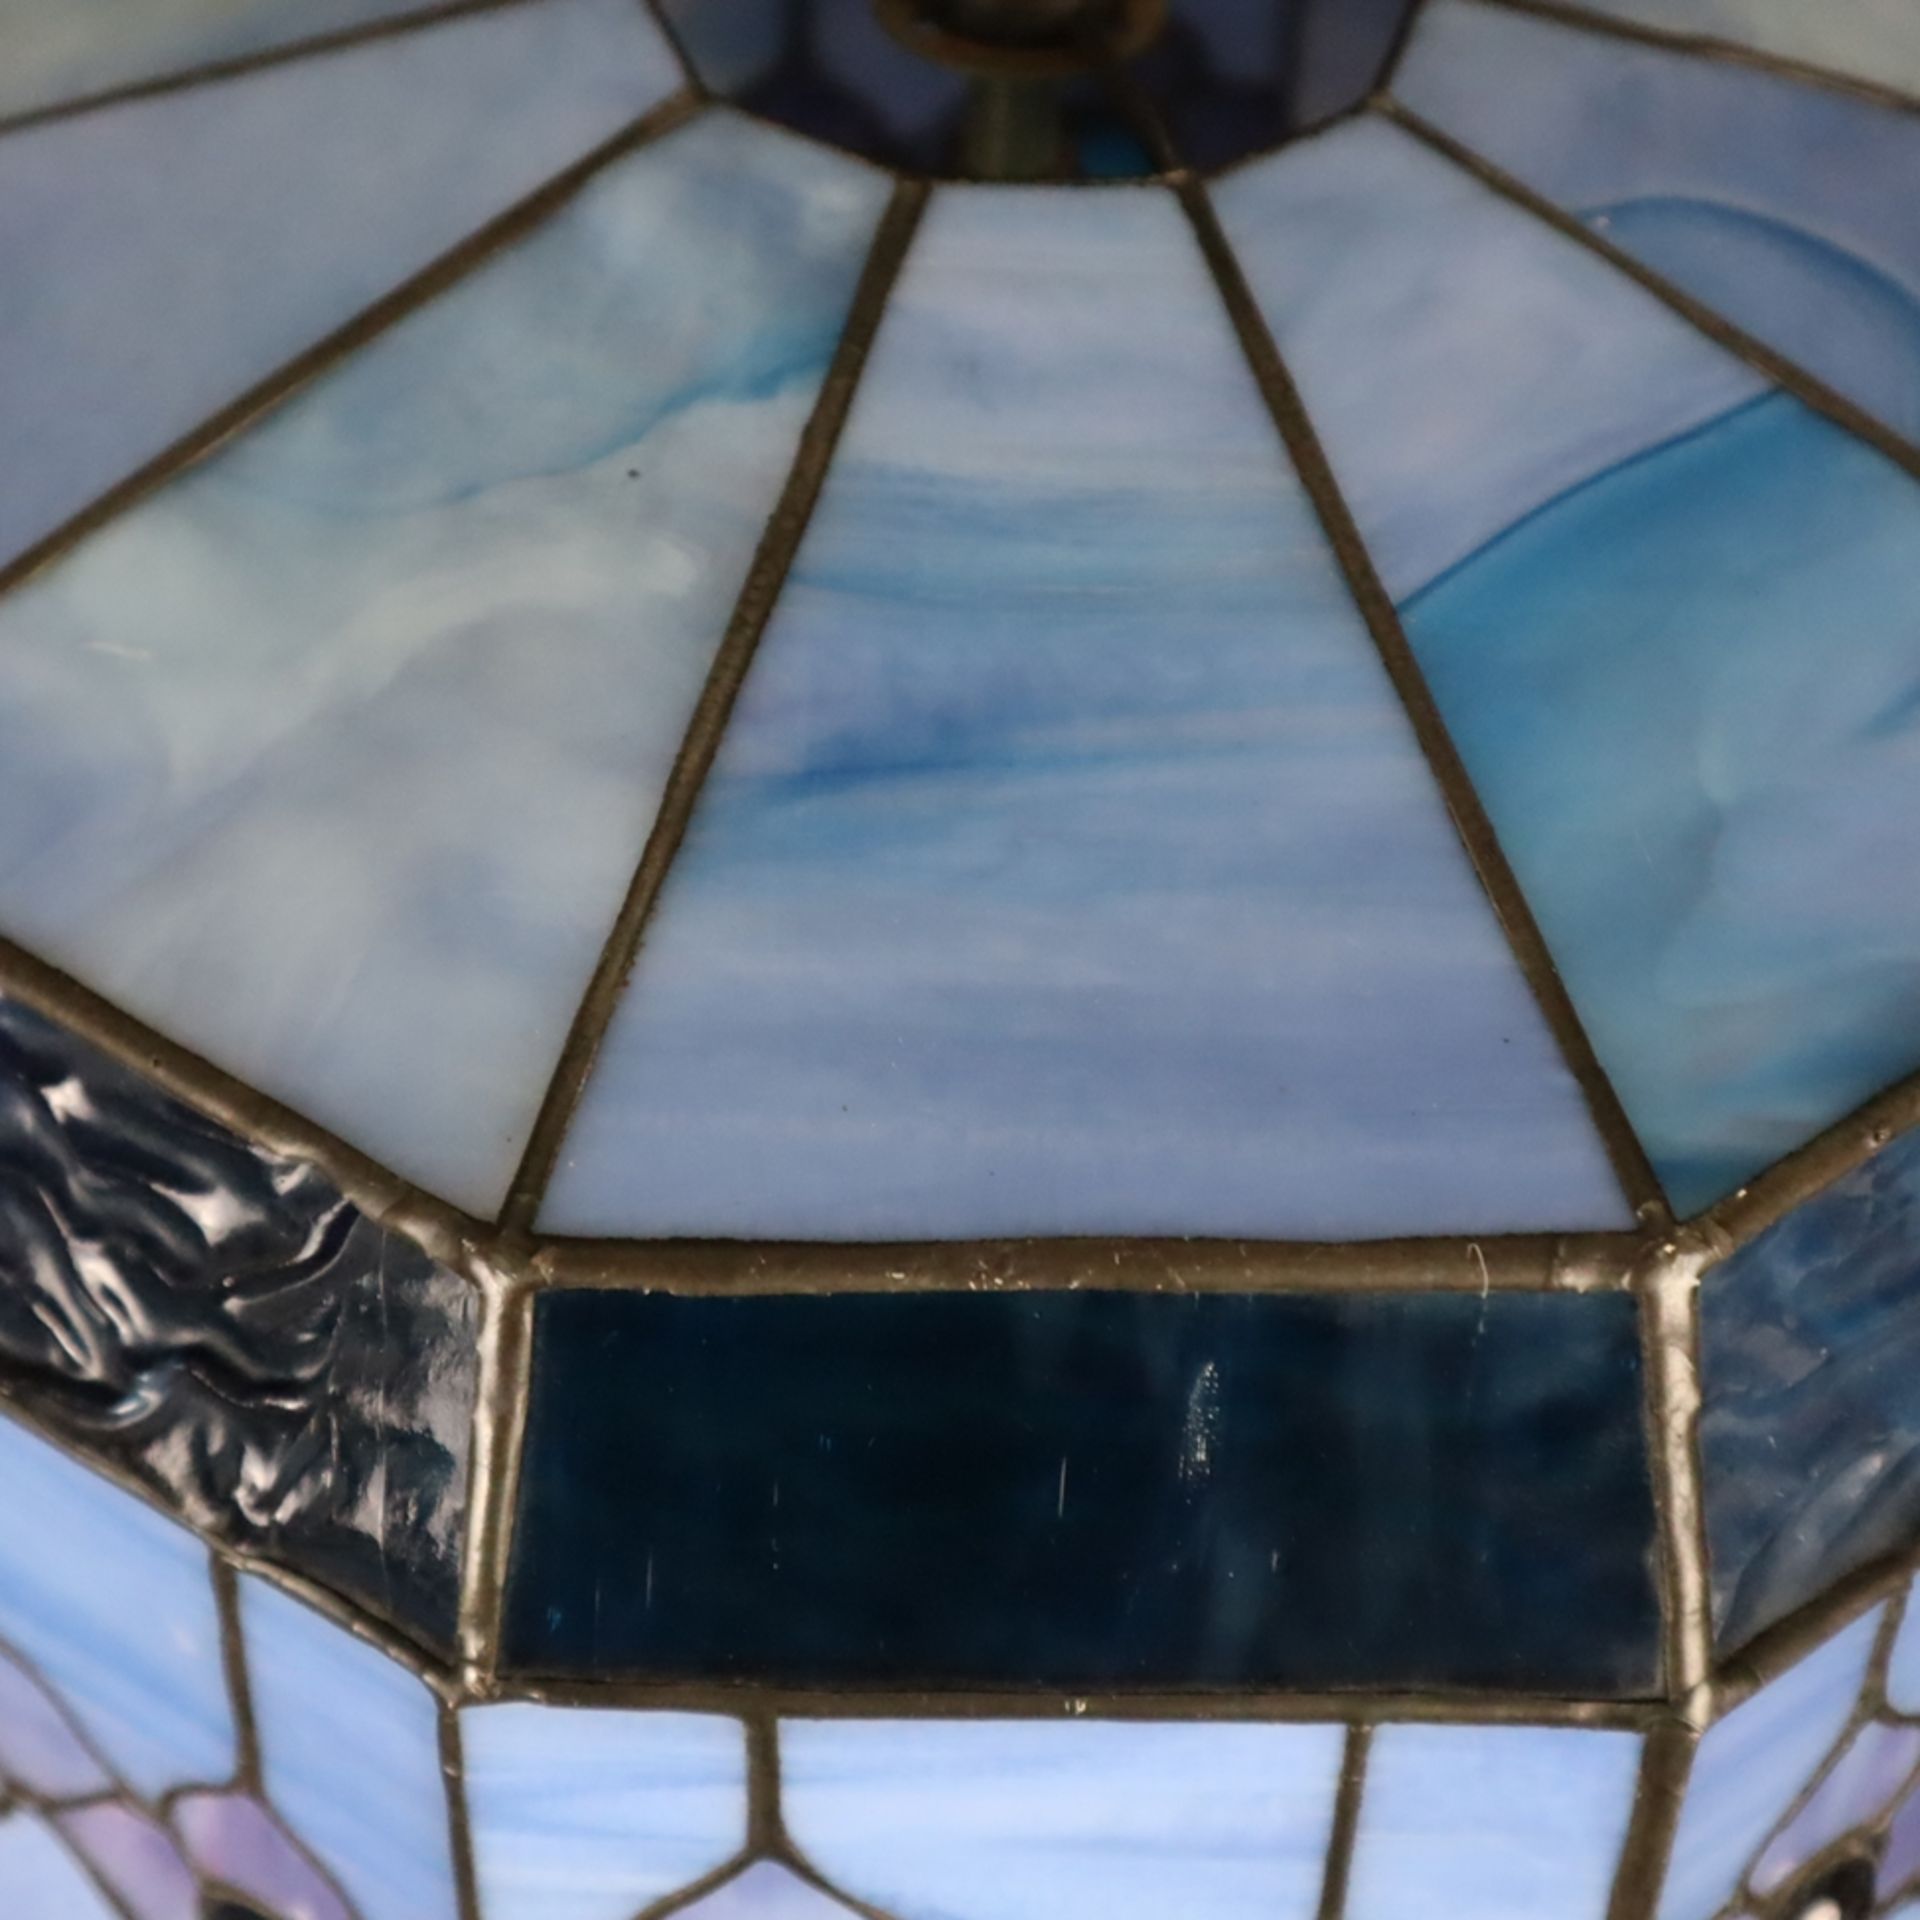 Deckenlampe im Tiffany-Stil - 10-eckiger Glasschirm in blauen und lilafarbenen Tönen, Bleibänder, s - Bild 6 aus 6